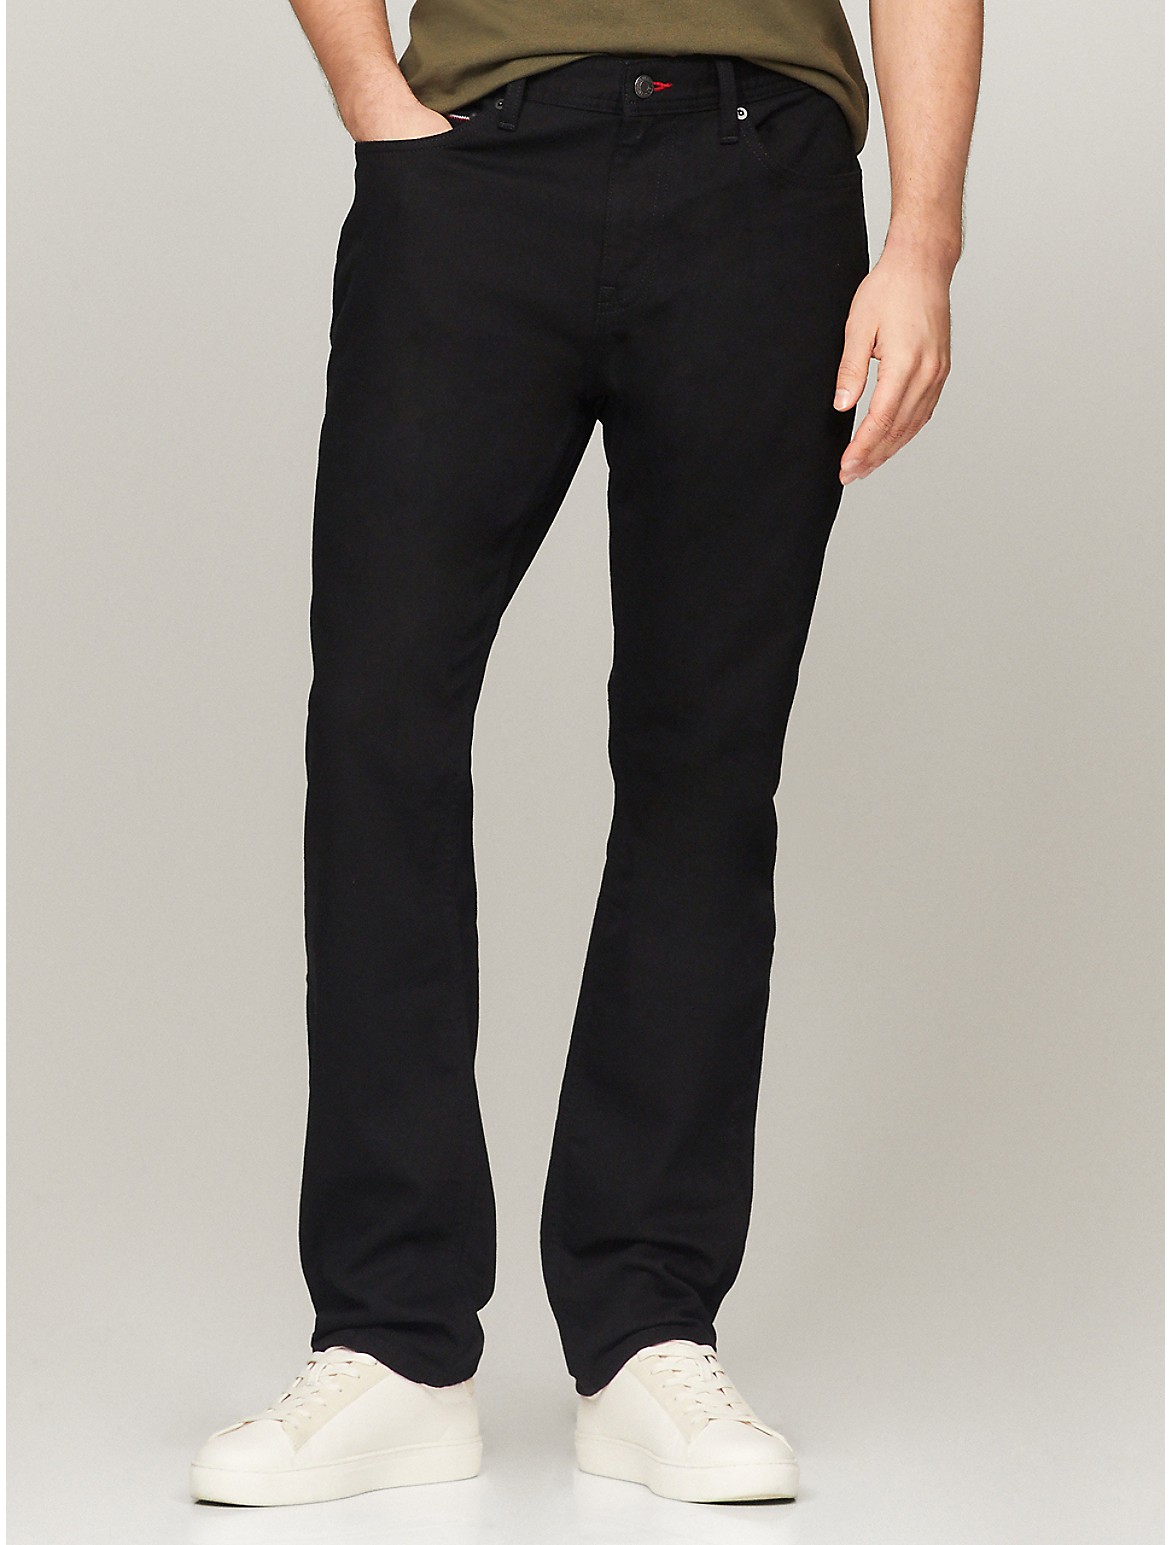 Tommy Hilfiger Men's Straight Fit Black Jean - Black - 34W x 34L